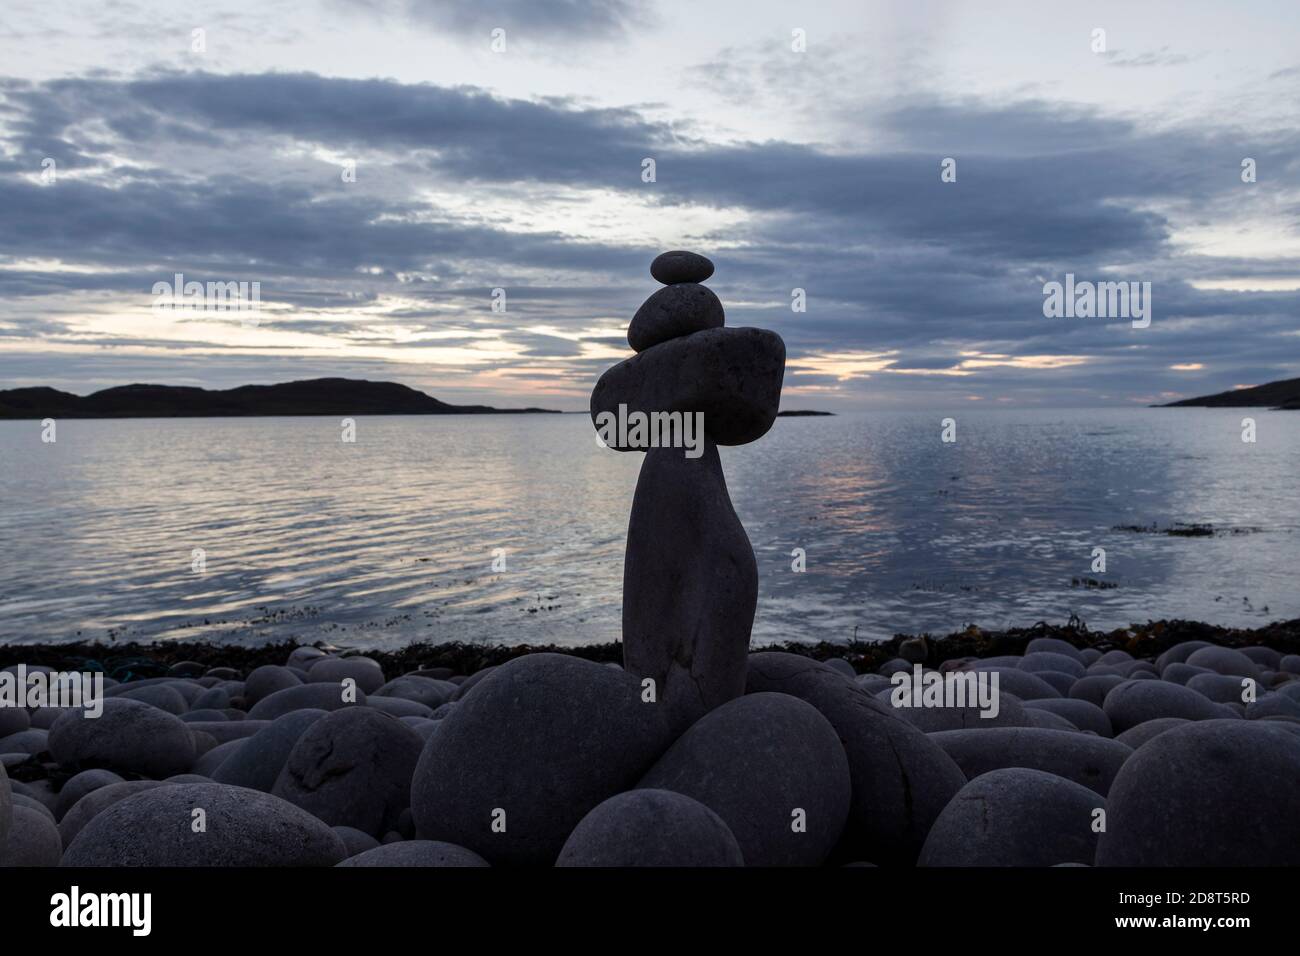 Piedras apiladas en equilibrio en una costa rocosa, Reino Unido Foto de stock